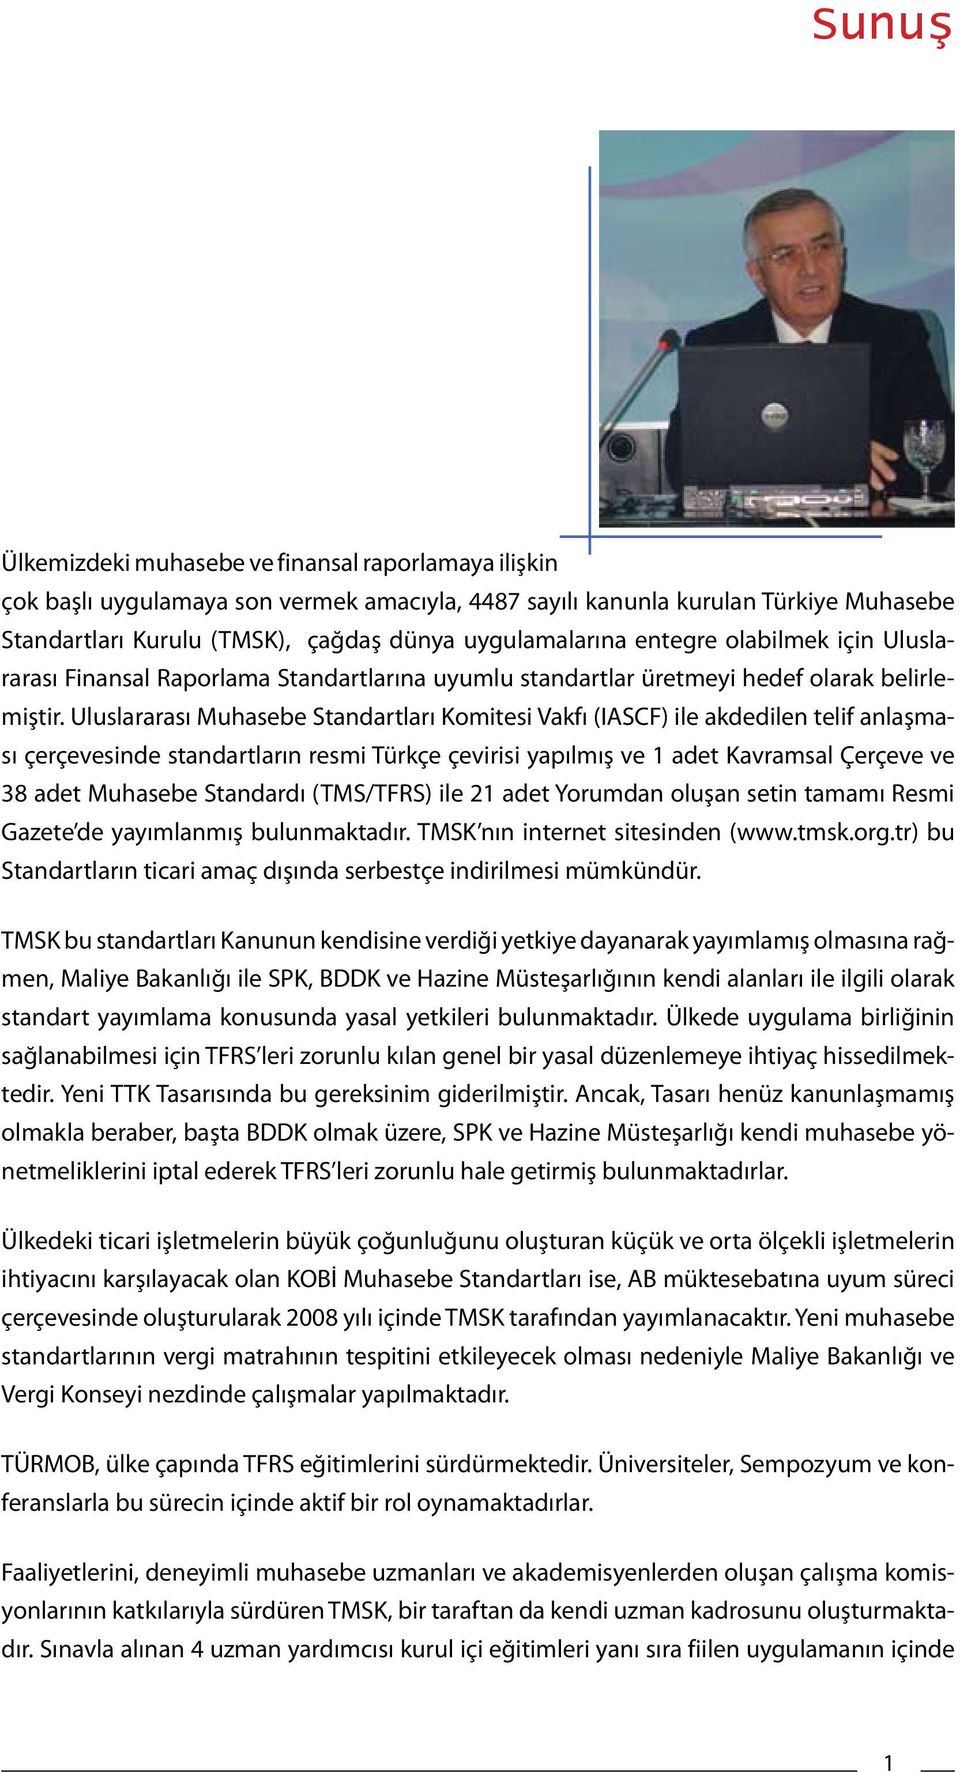 Uluslararası Muhasebe Standartları Komitesi Vakfı (IASCF) ile akdedilen telif anlaşması çerçevesinde standartların resmi Türkçe çevirisi yapılmış ve 1 adet Kavramsal Çerçeve ve 38 adet Muhasebe